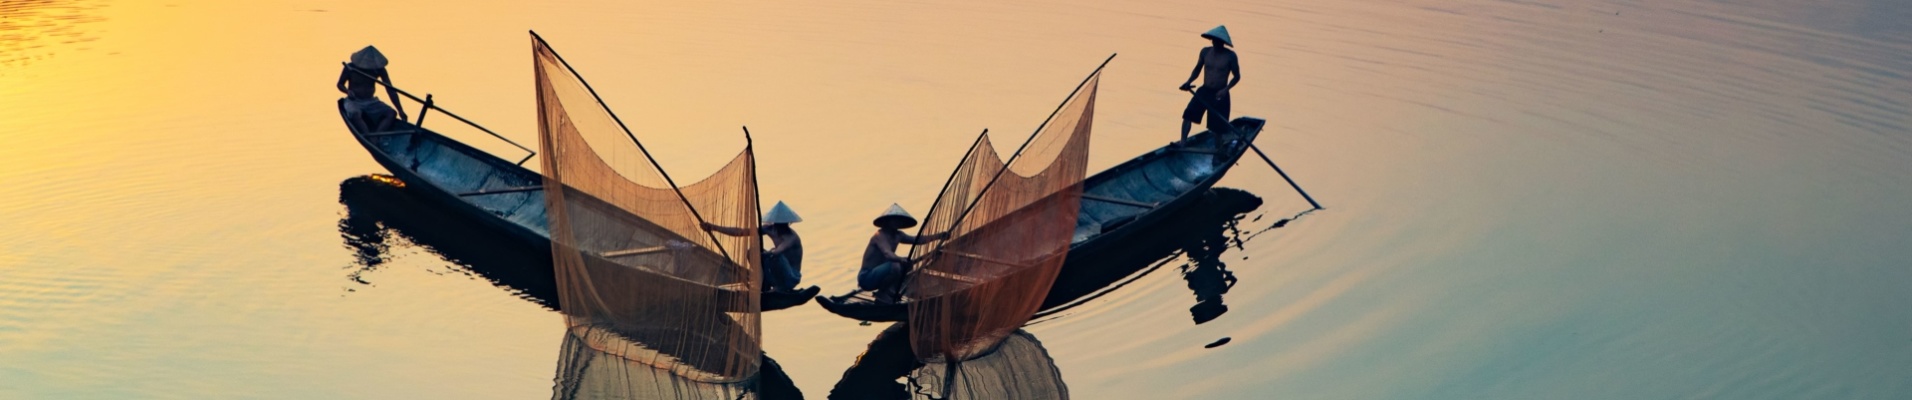 Pêcheurs sur la rivière des parfums, Hue